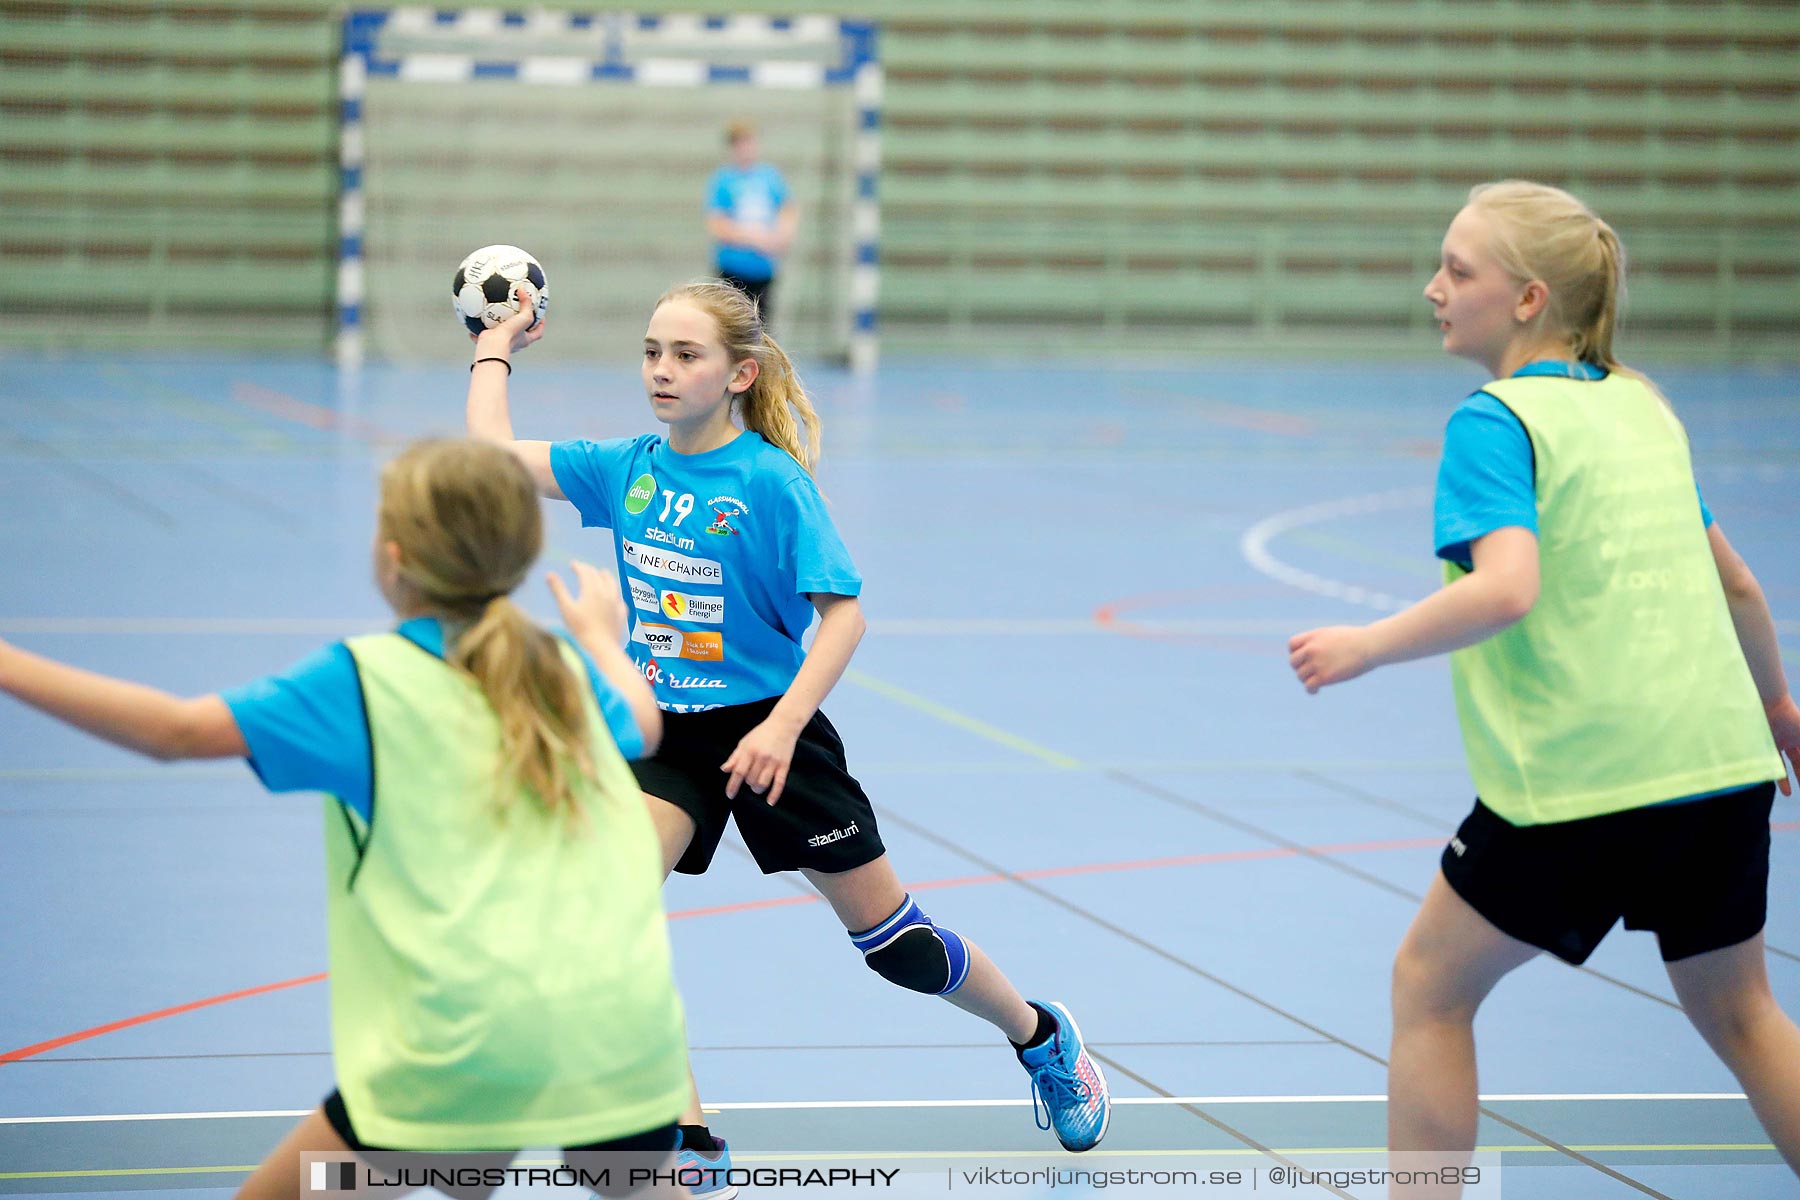 Klasshandboll Skövde 2019 Åldersklass 2007,mix,Arena Skövde,Skövde,Sverige,Handboll,,2019,212375